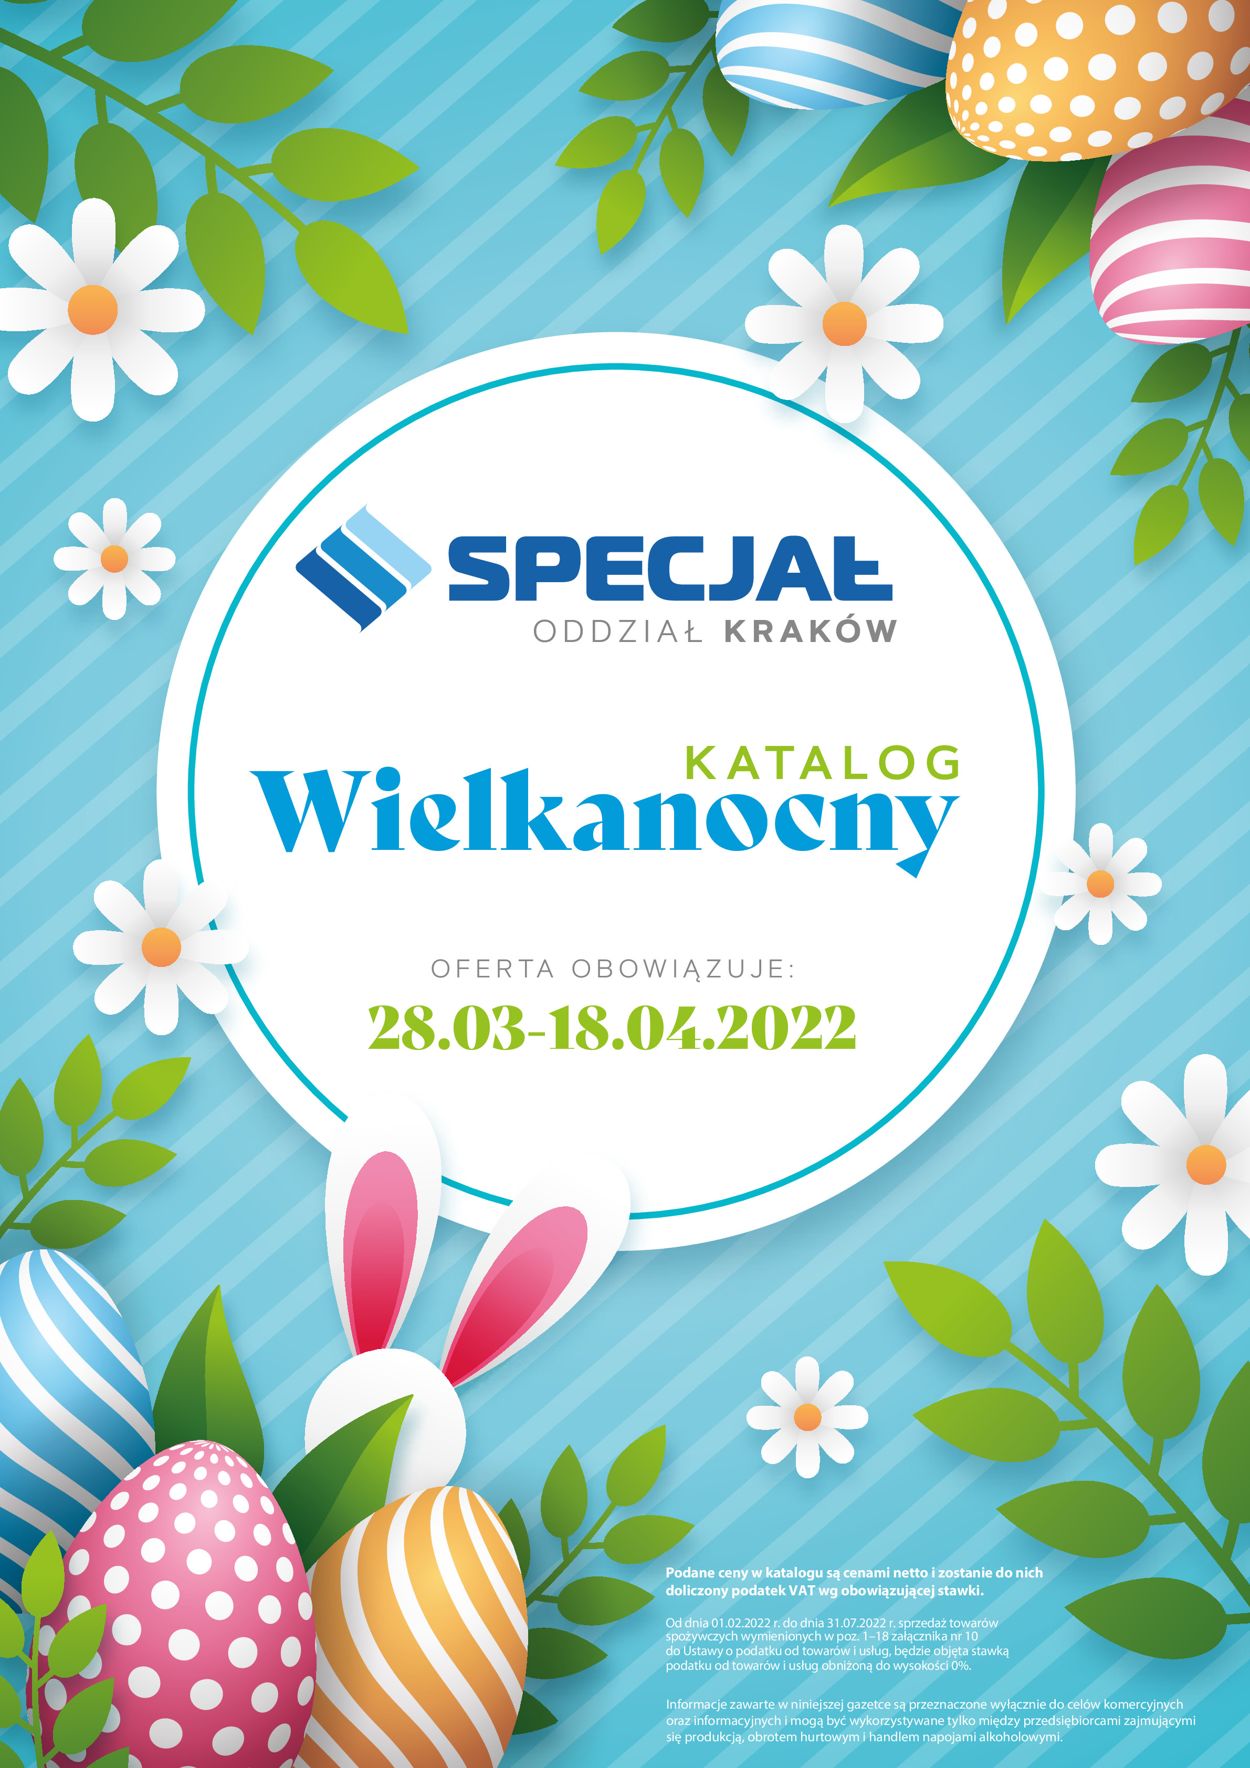 Gazetka promocyjna Specjał WIELKANOC 2022 - Oddział Kraków - 28.03-18.04.2022